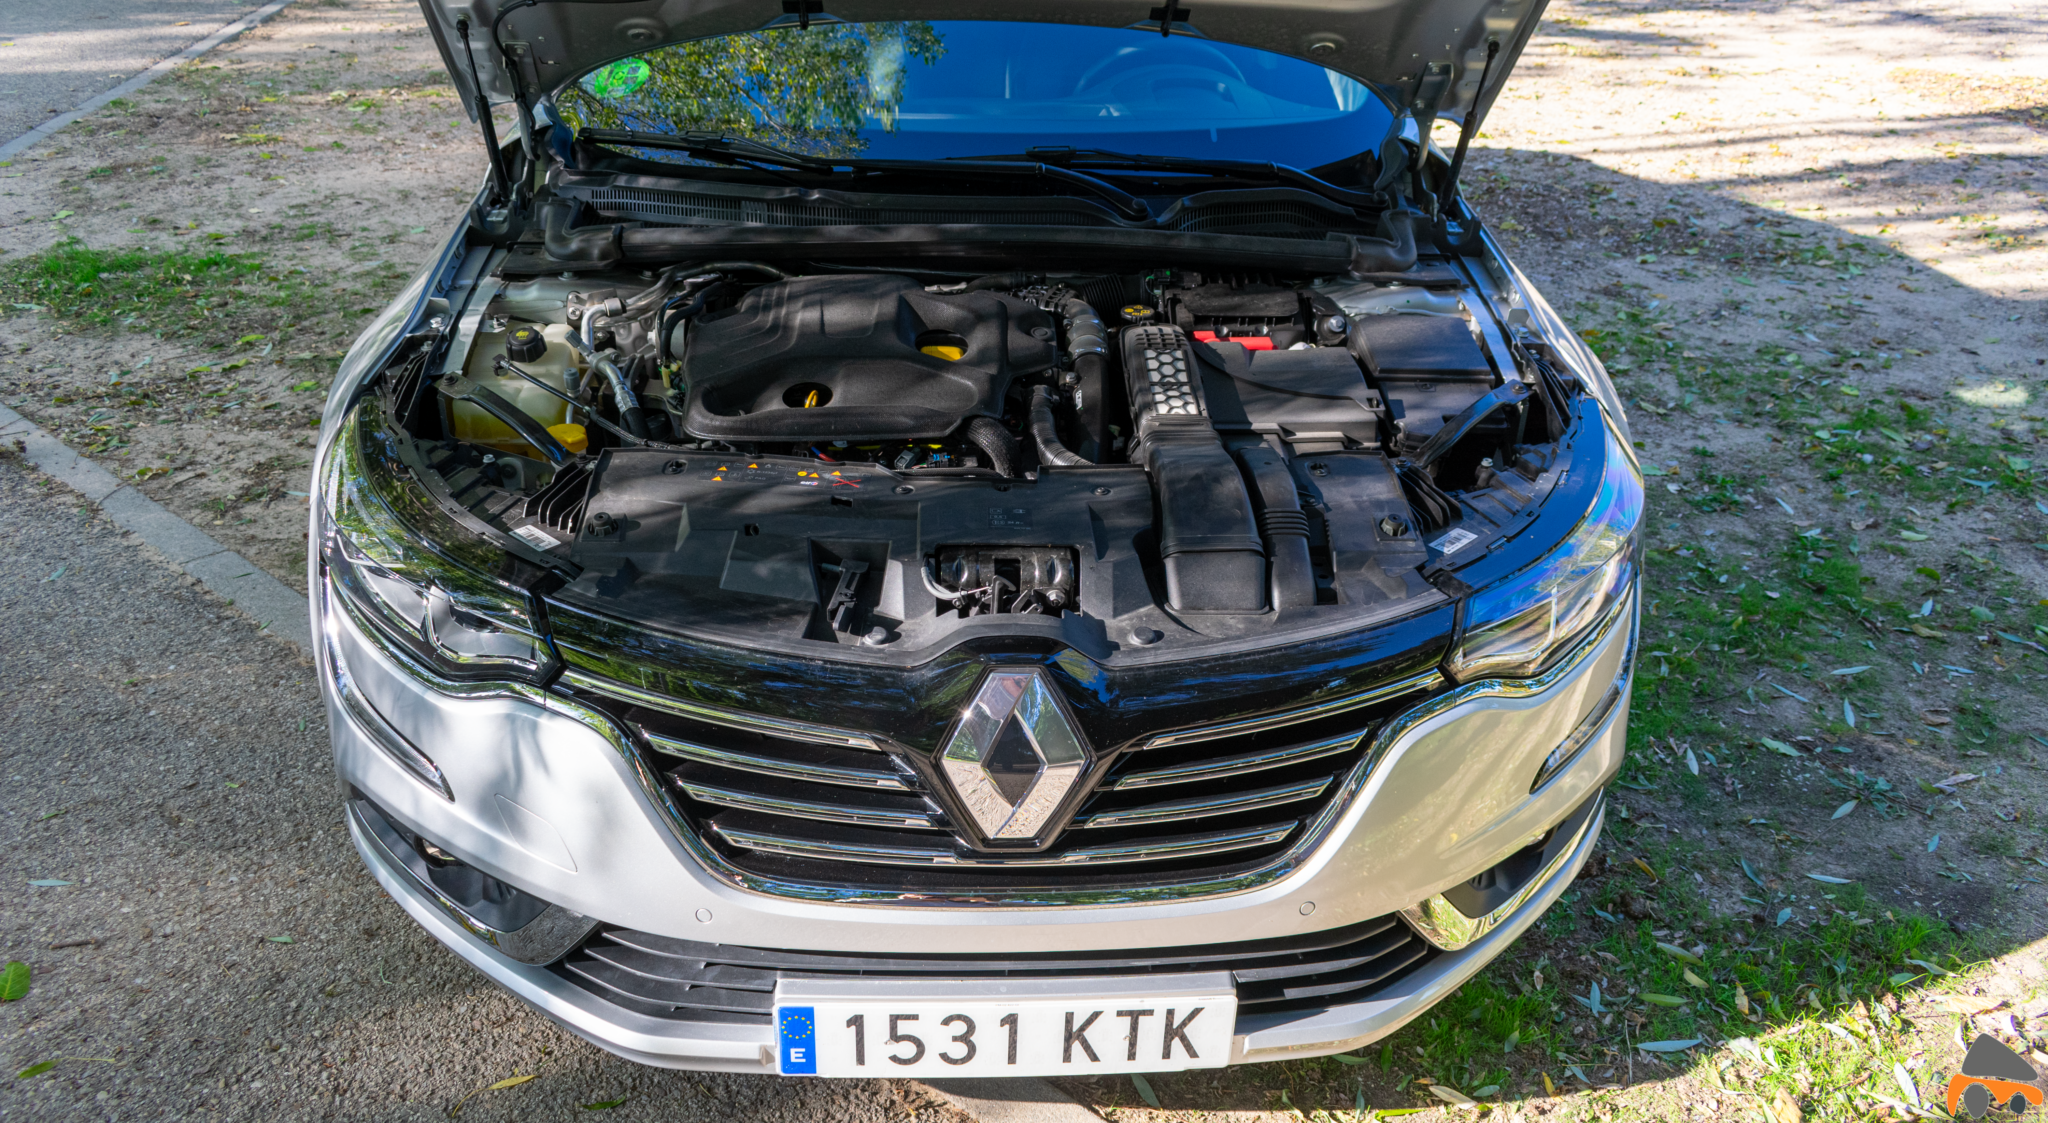 Motor Renault Talisman diesel - Renault Talisman: Una berlina rápida, deportiva y muy cómoda